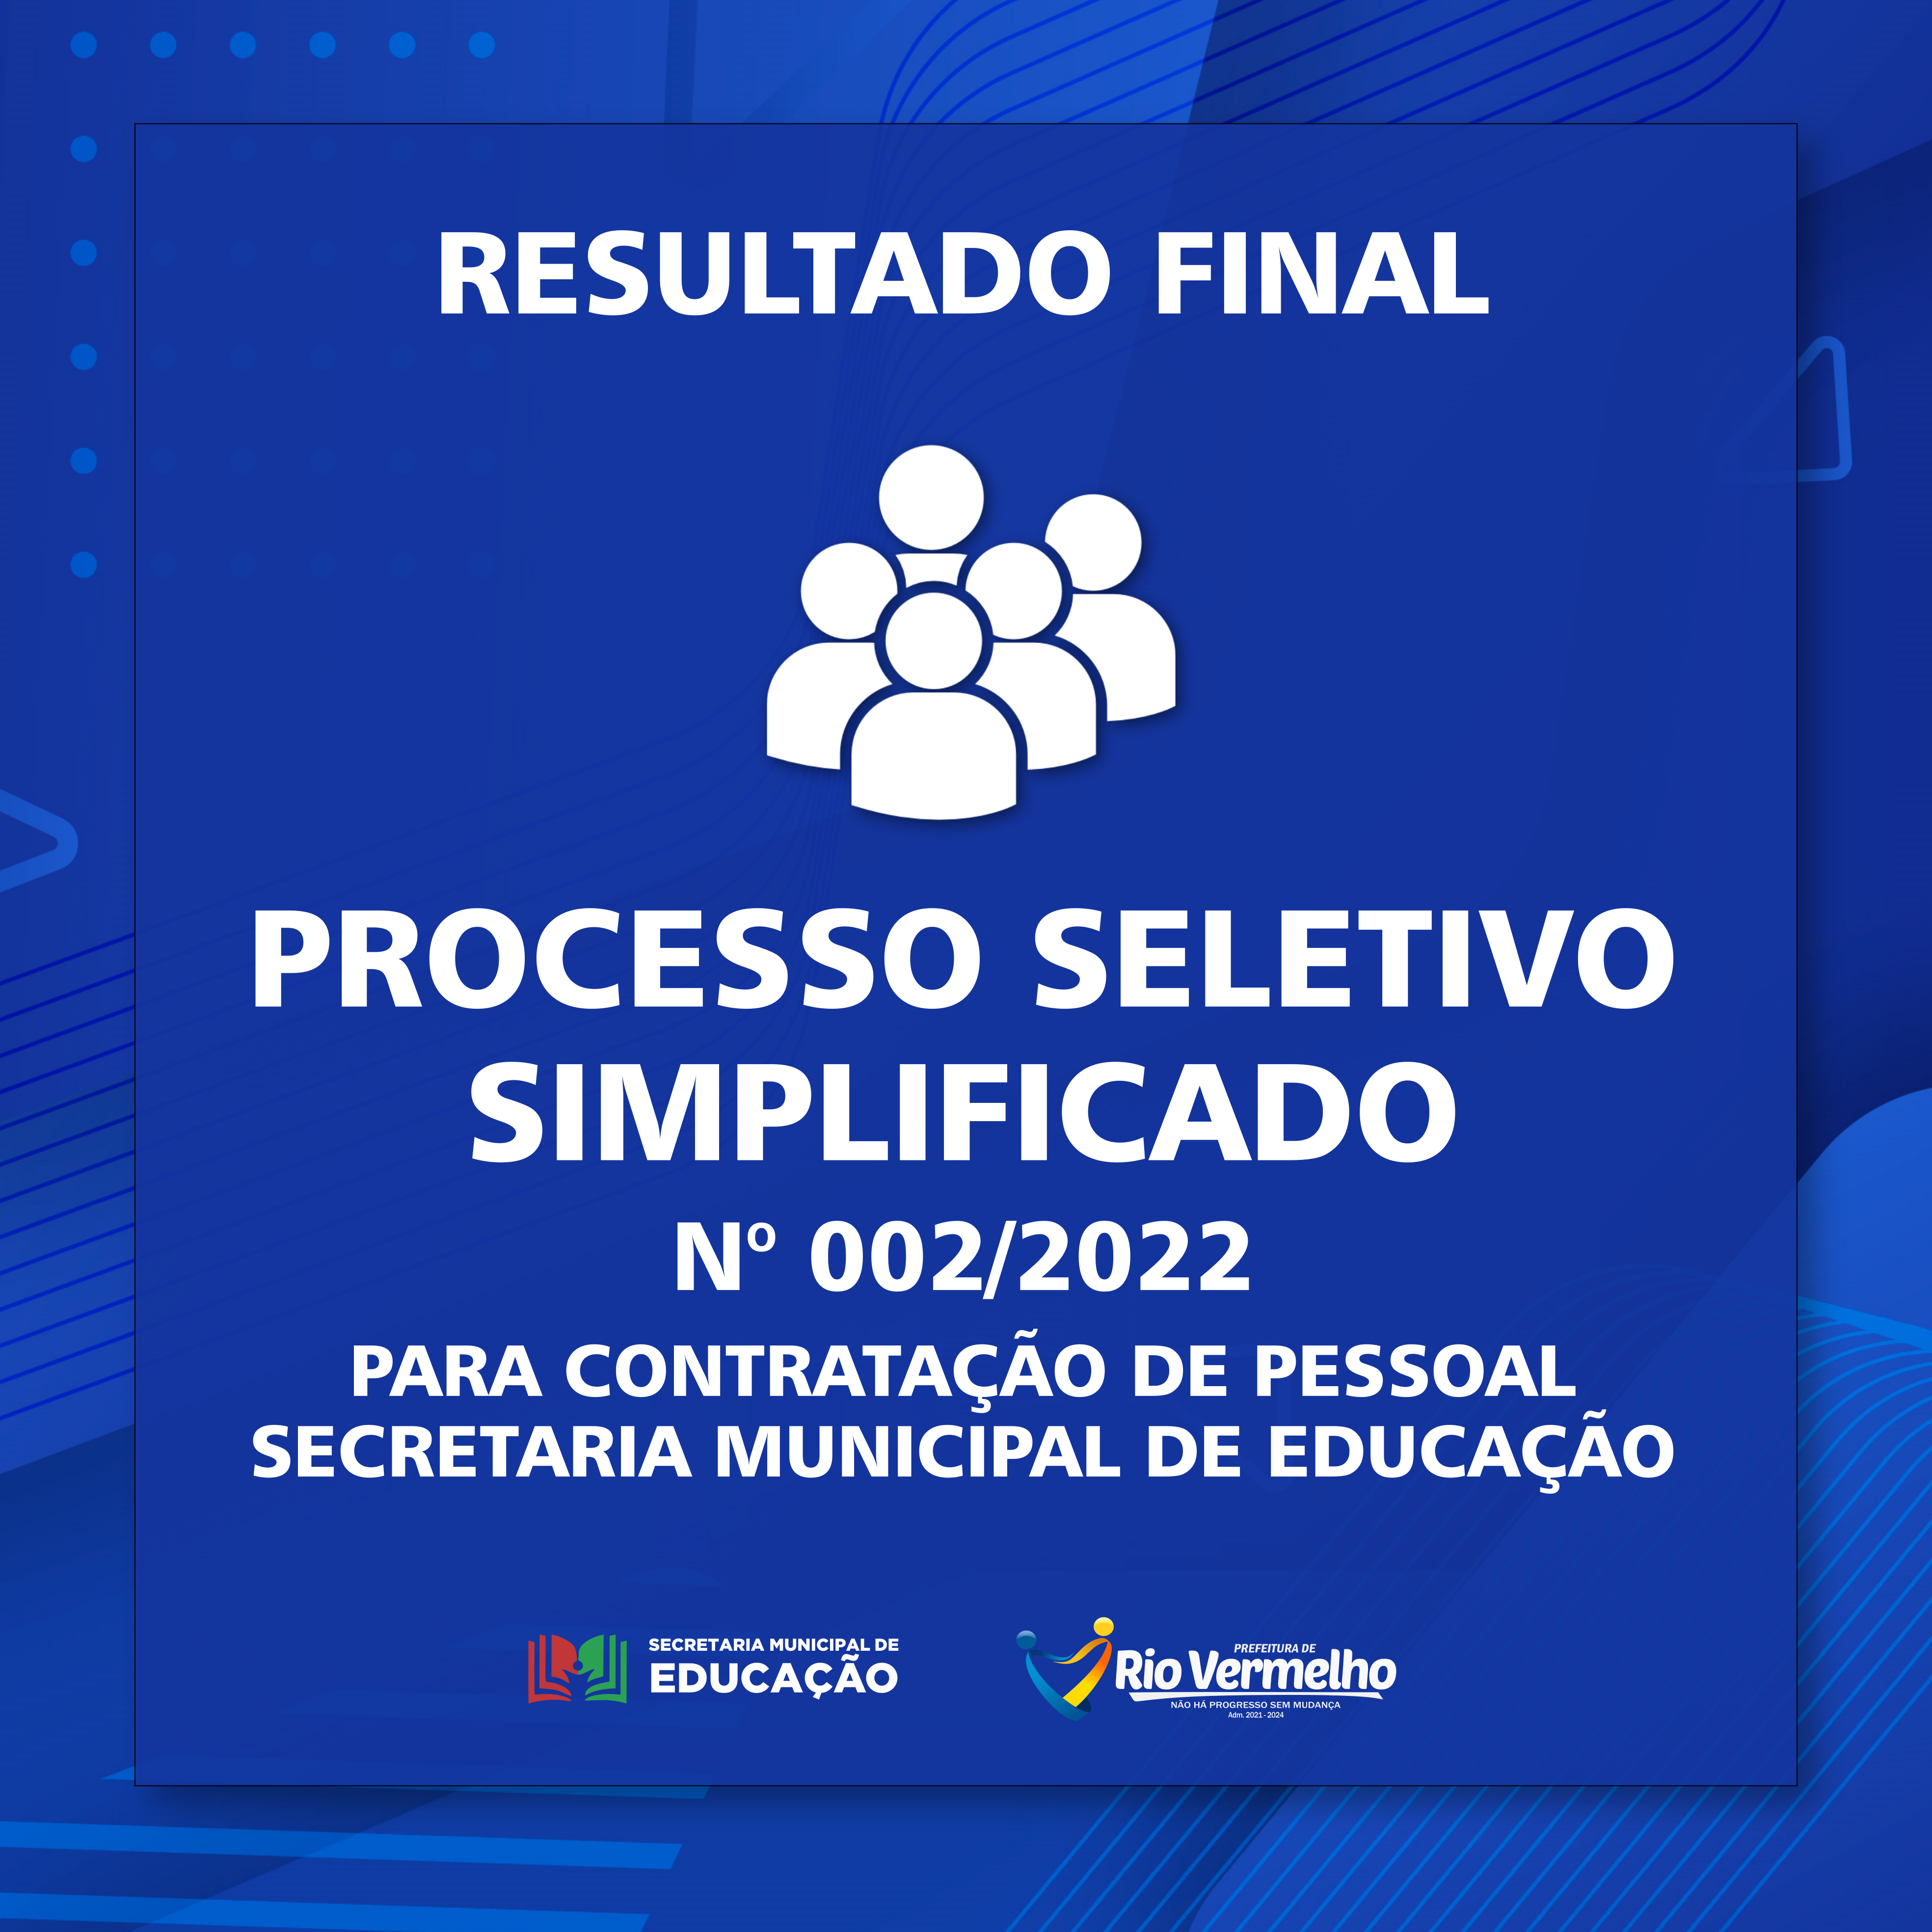 You are currently viewing RESULTADO FINAL DO PROCESSO SELETIVO SIMPLIFICADO Nº 002/2022 – SECRETARIA MUNICIPAL DE EDUCAÇÃO